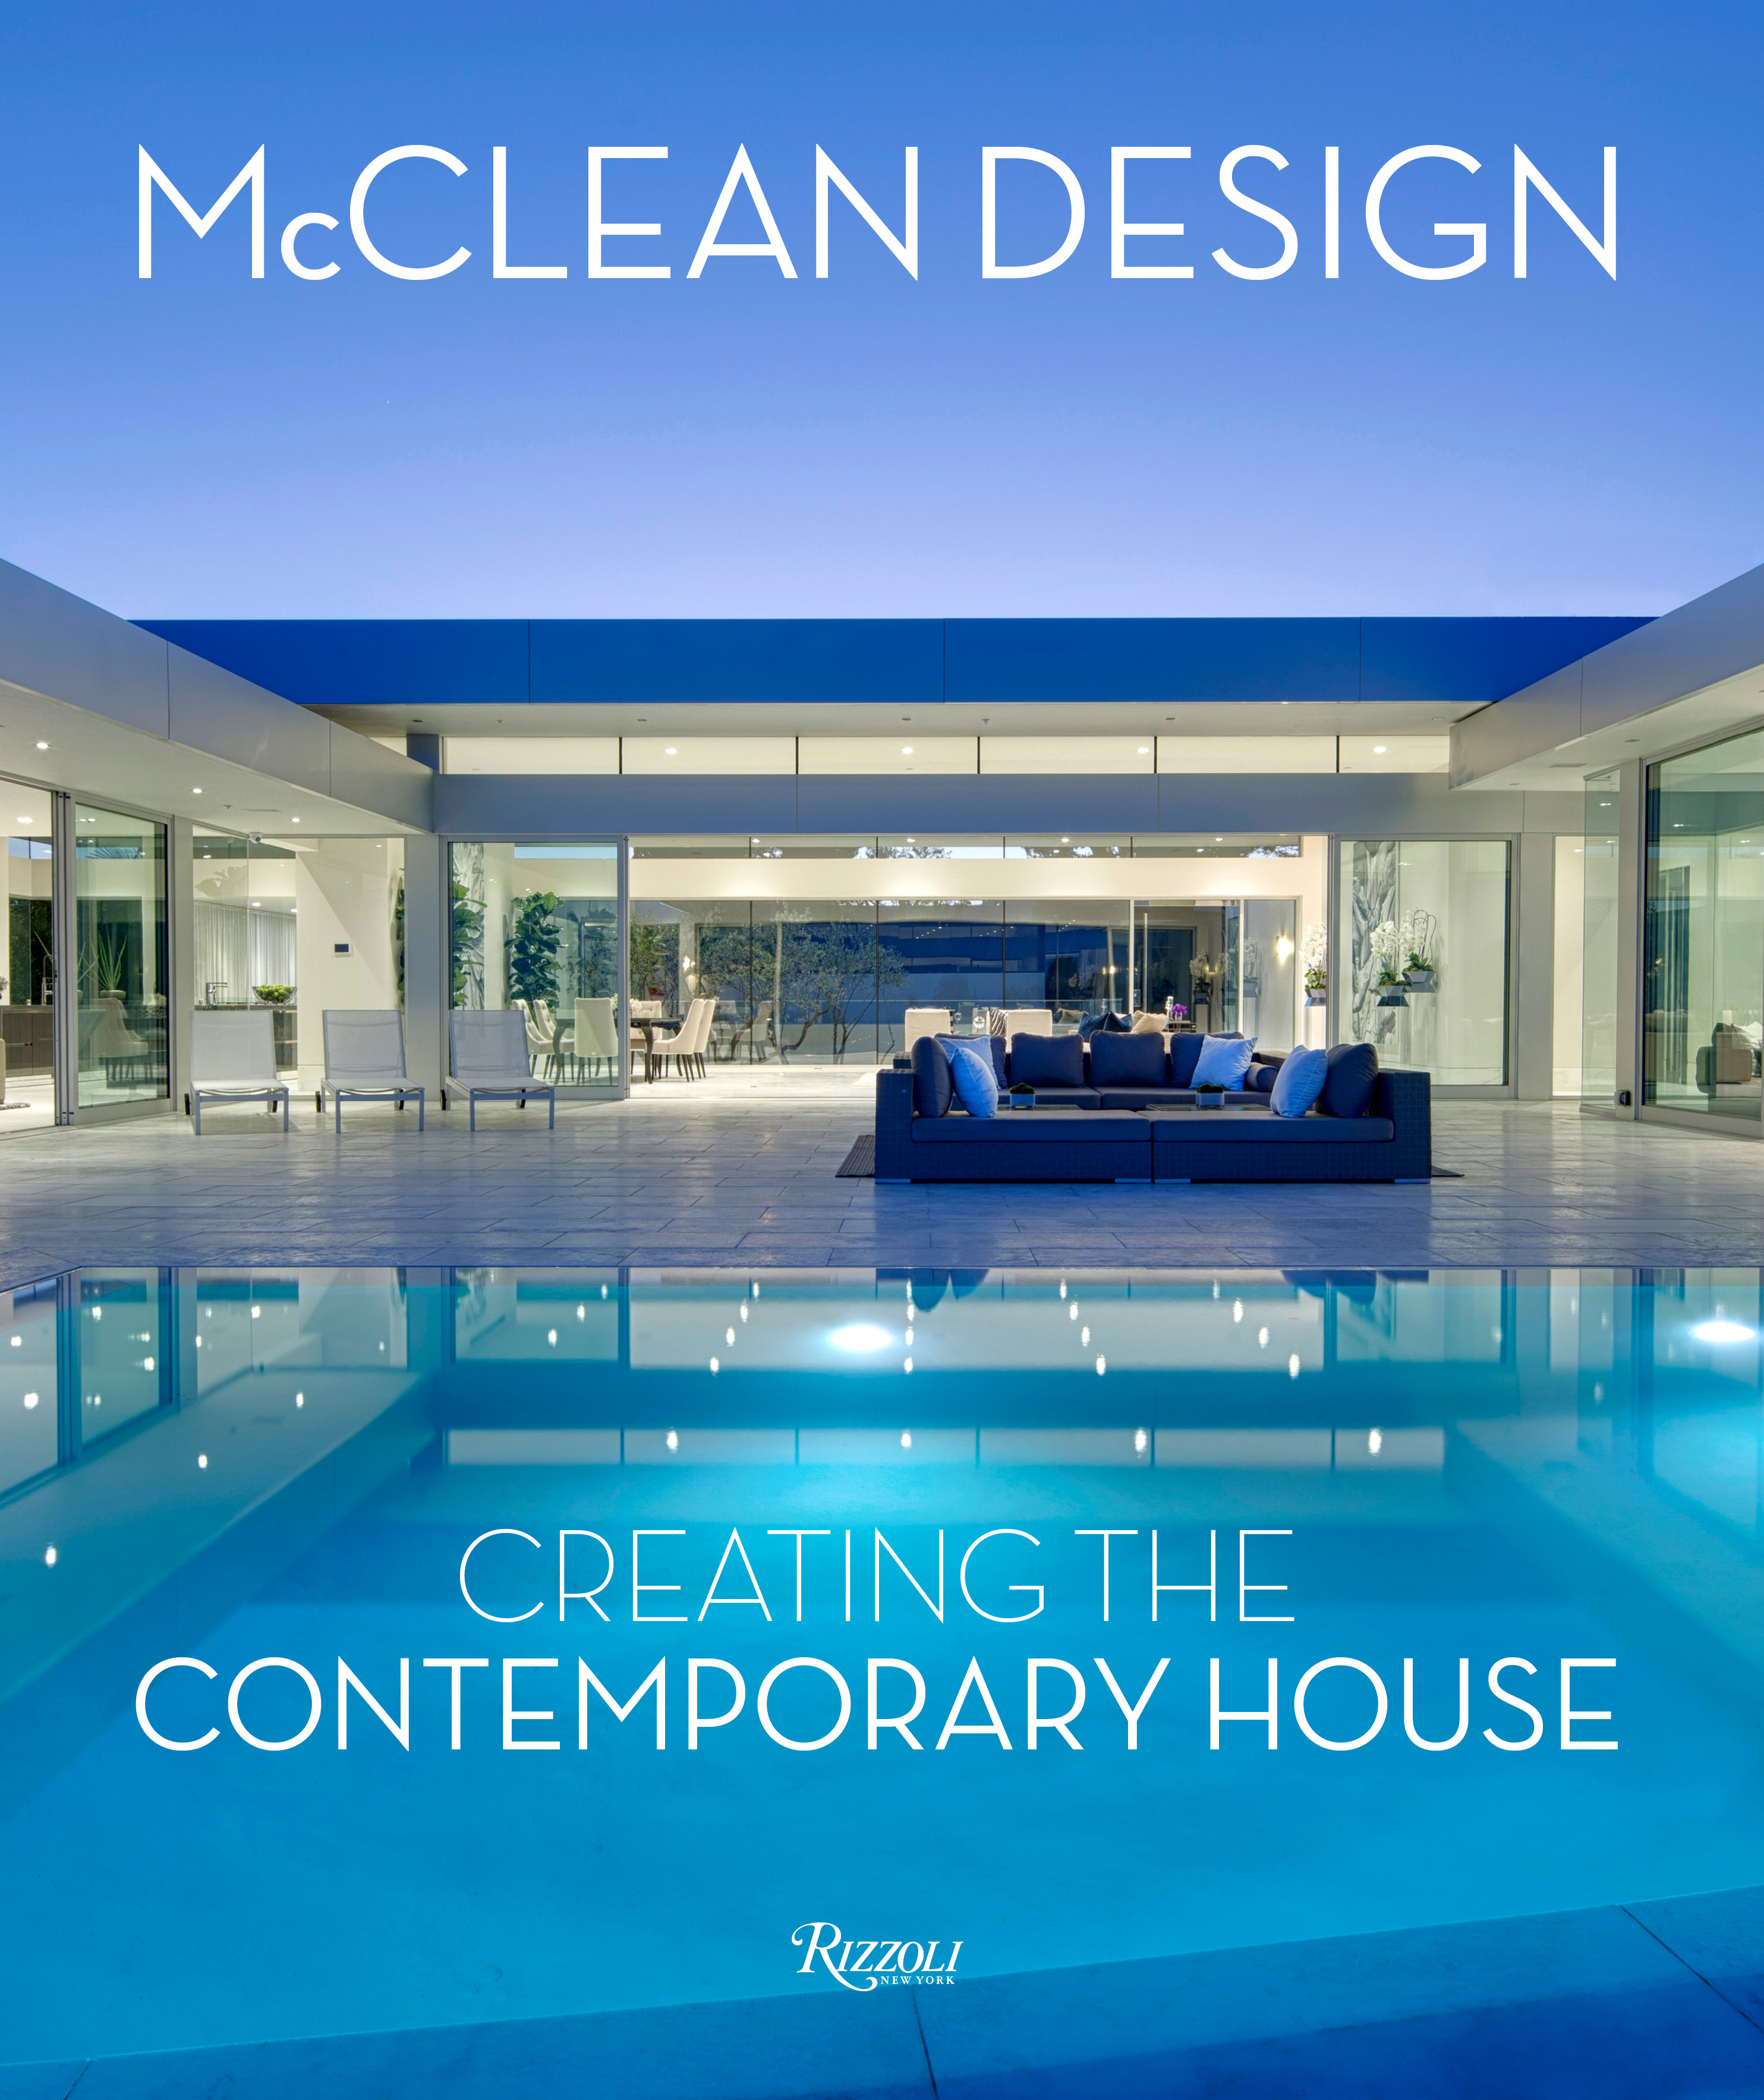 McClean Design